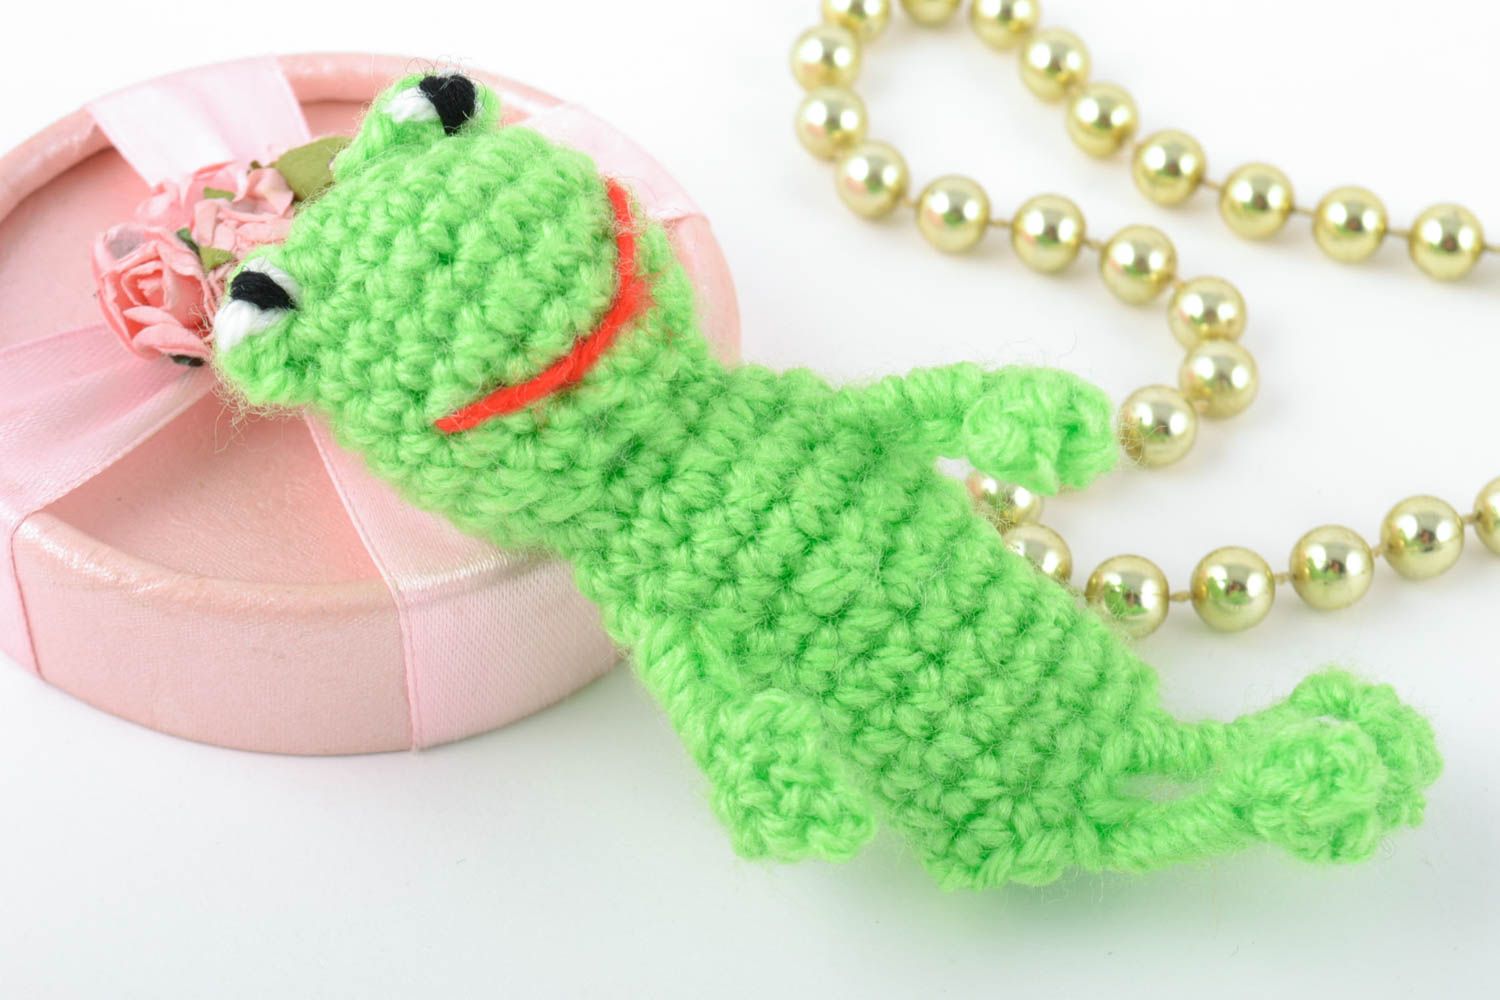 Textil Fingerpuppe Frosch in Grün aus Baumwolle und Wolle gehäkelt handmade foto 1